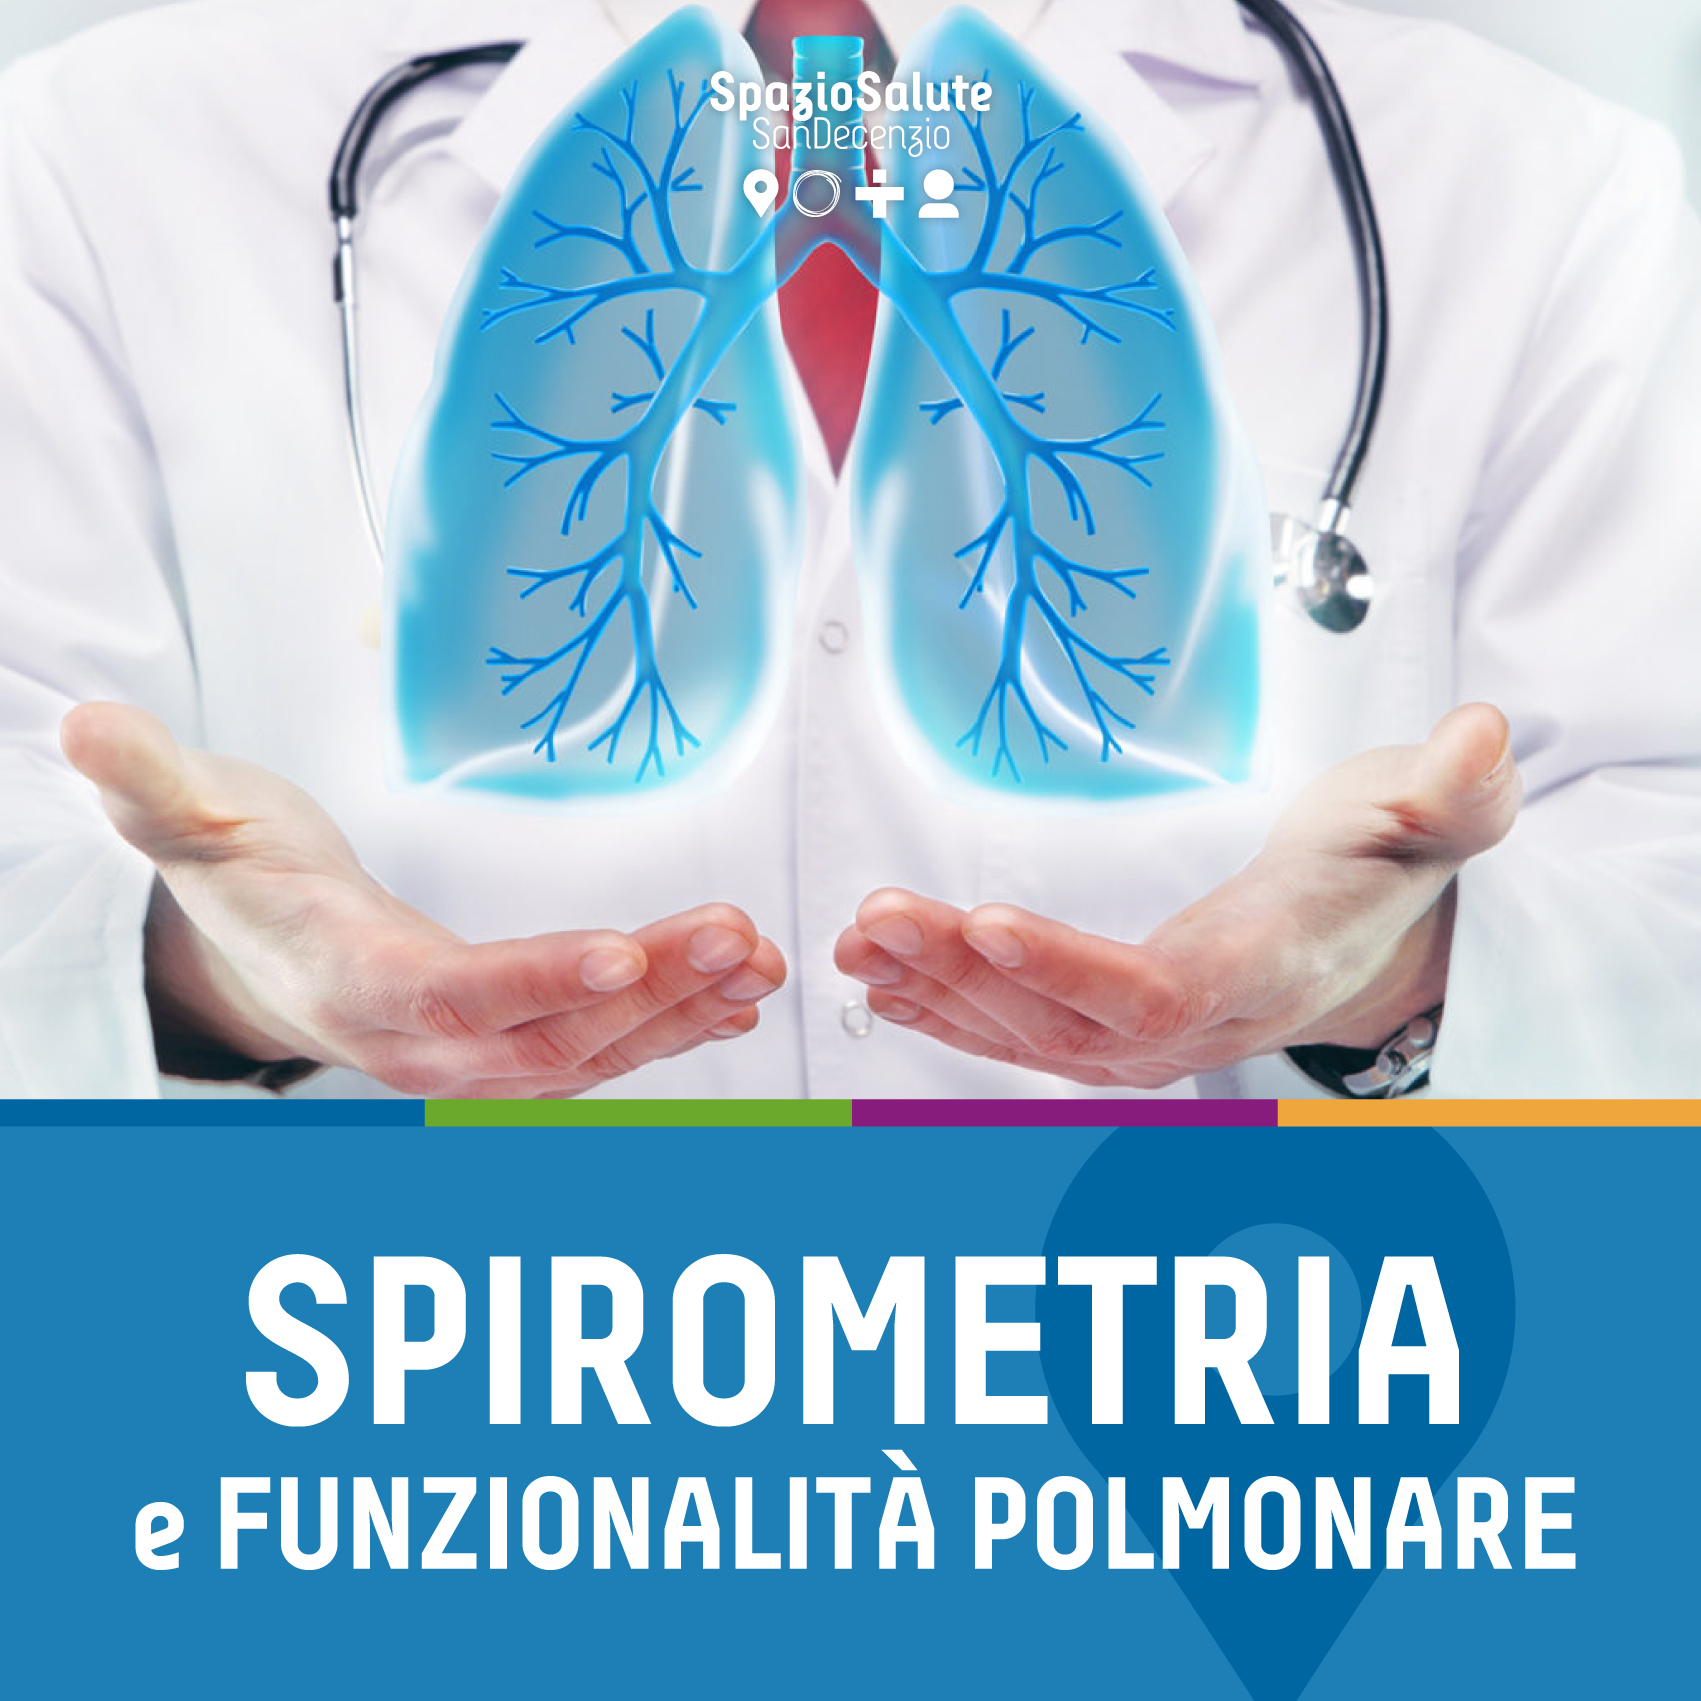 Spirometria e funzionalità polmonare